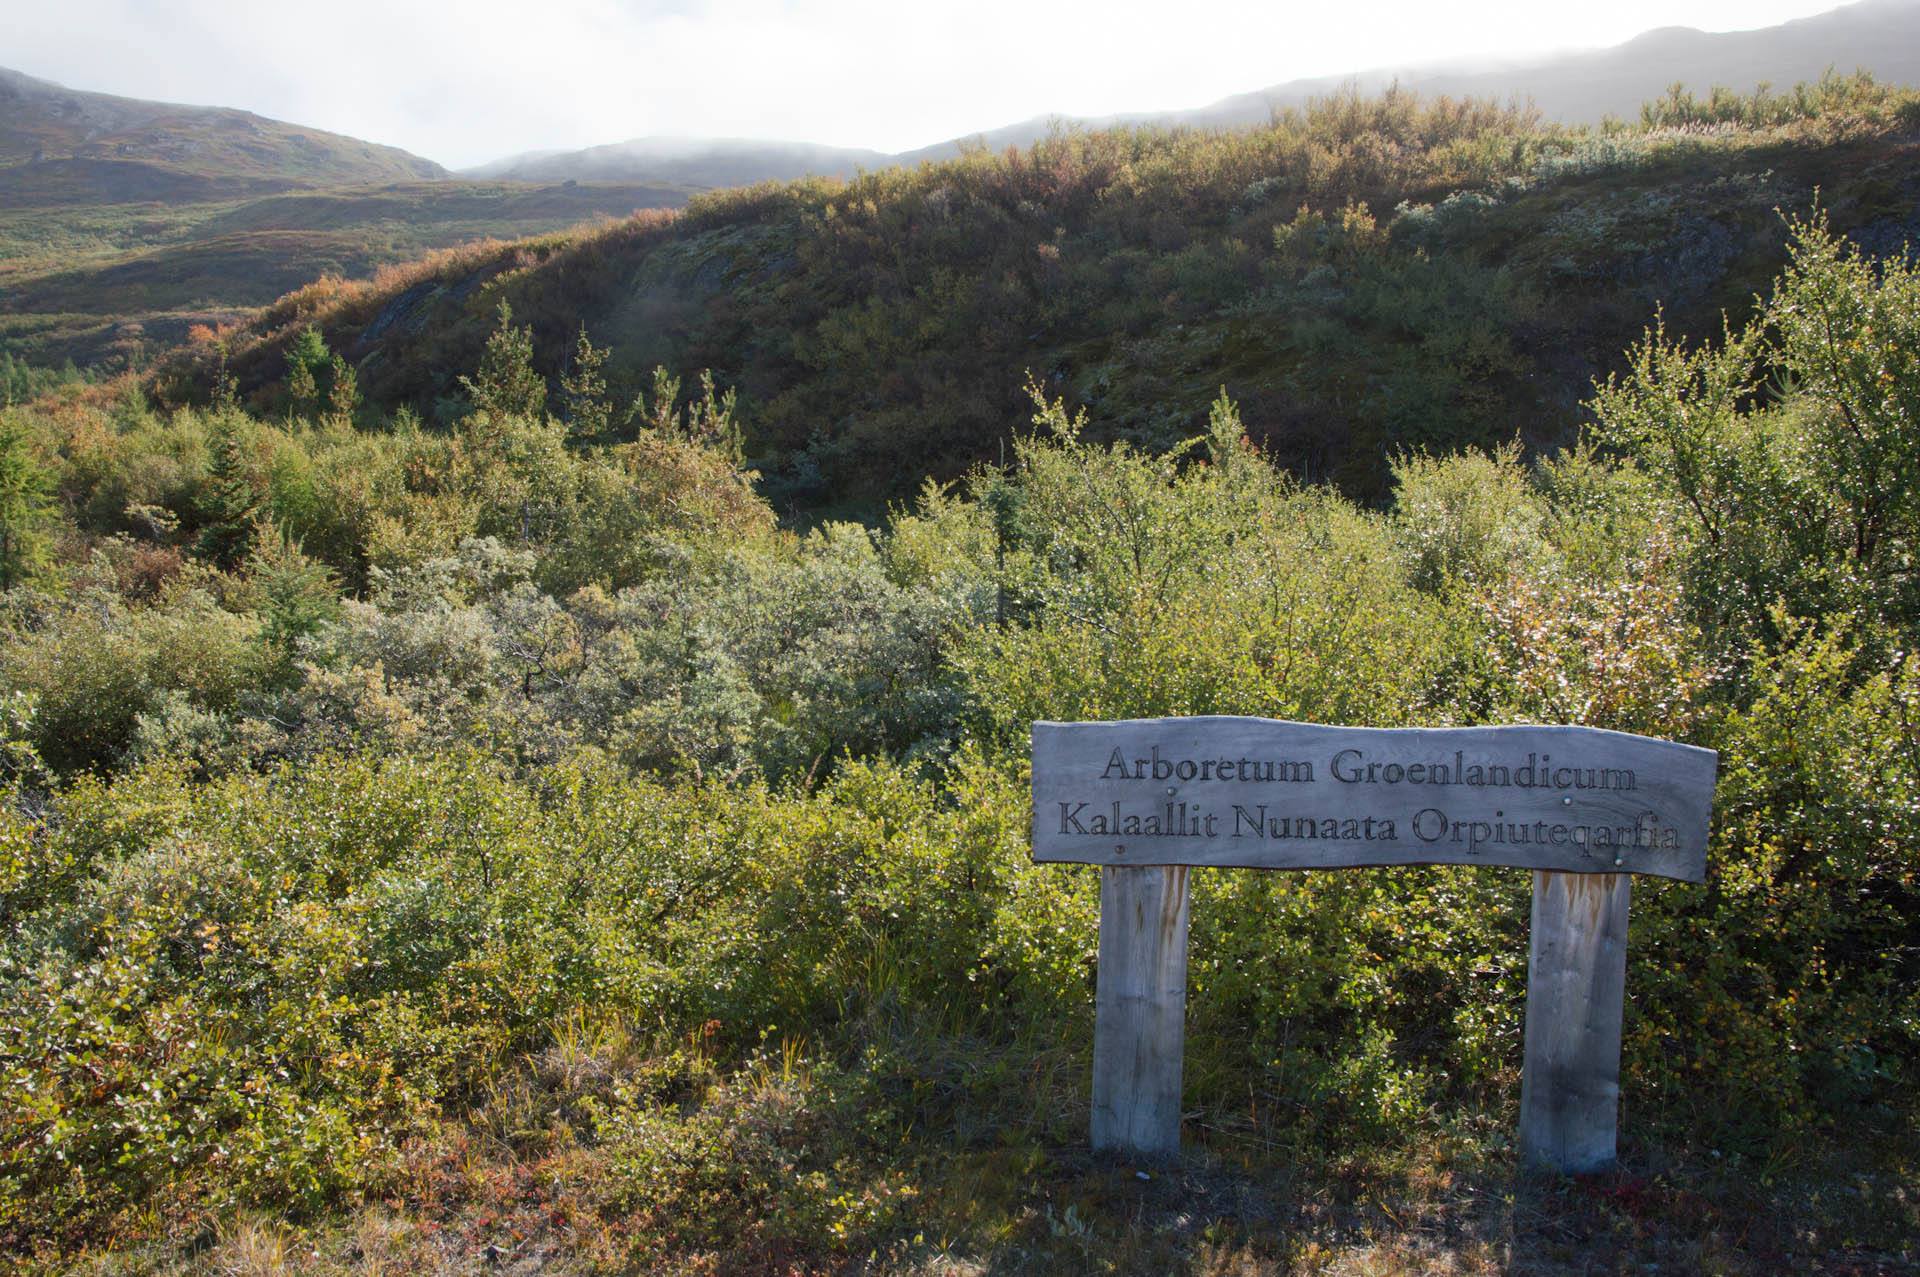 Grove of Peace in Greenland Arboretum Groenlandicum Tree of Peace Narsarsuaq